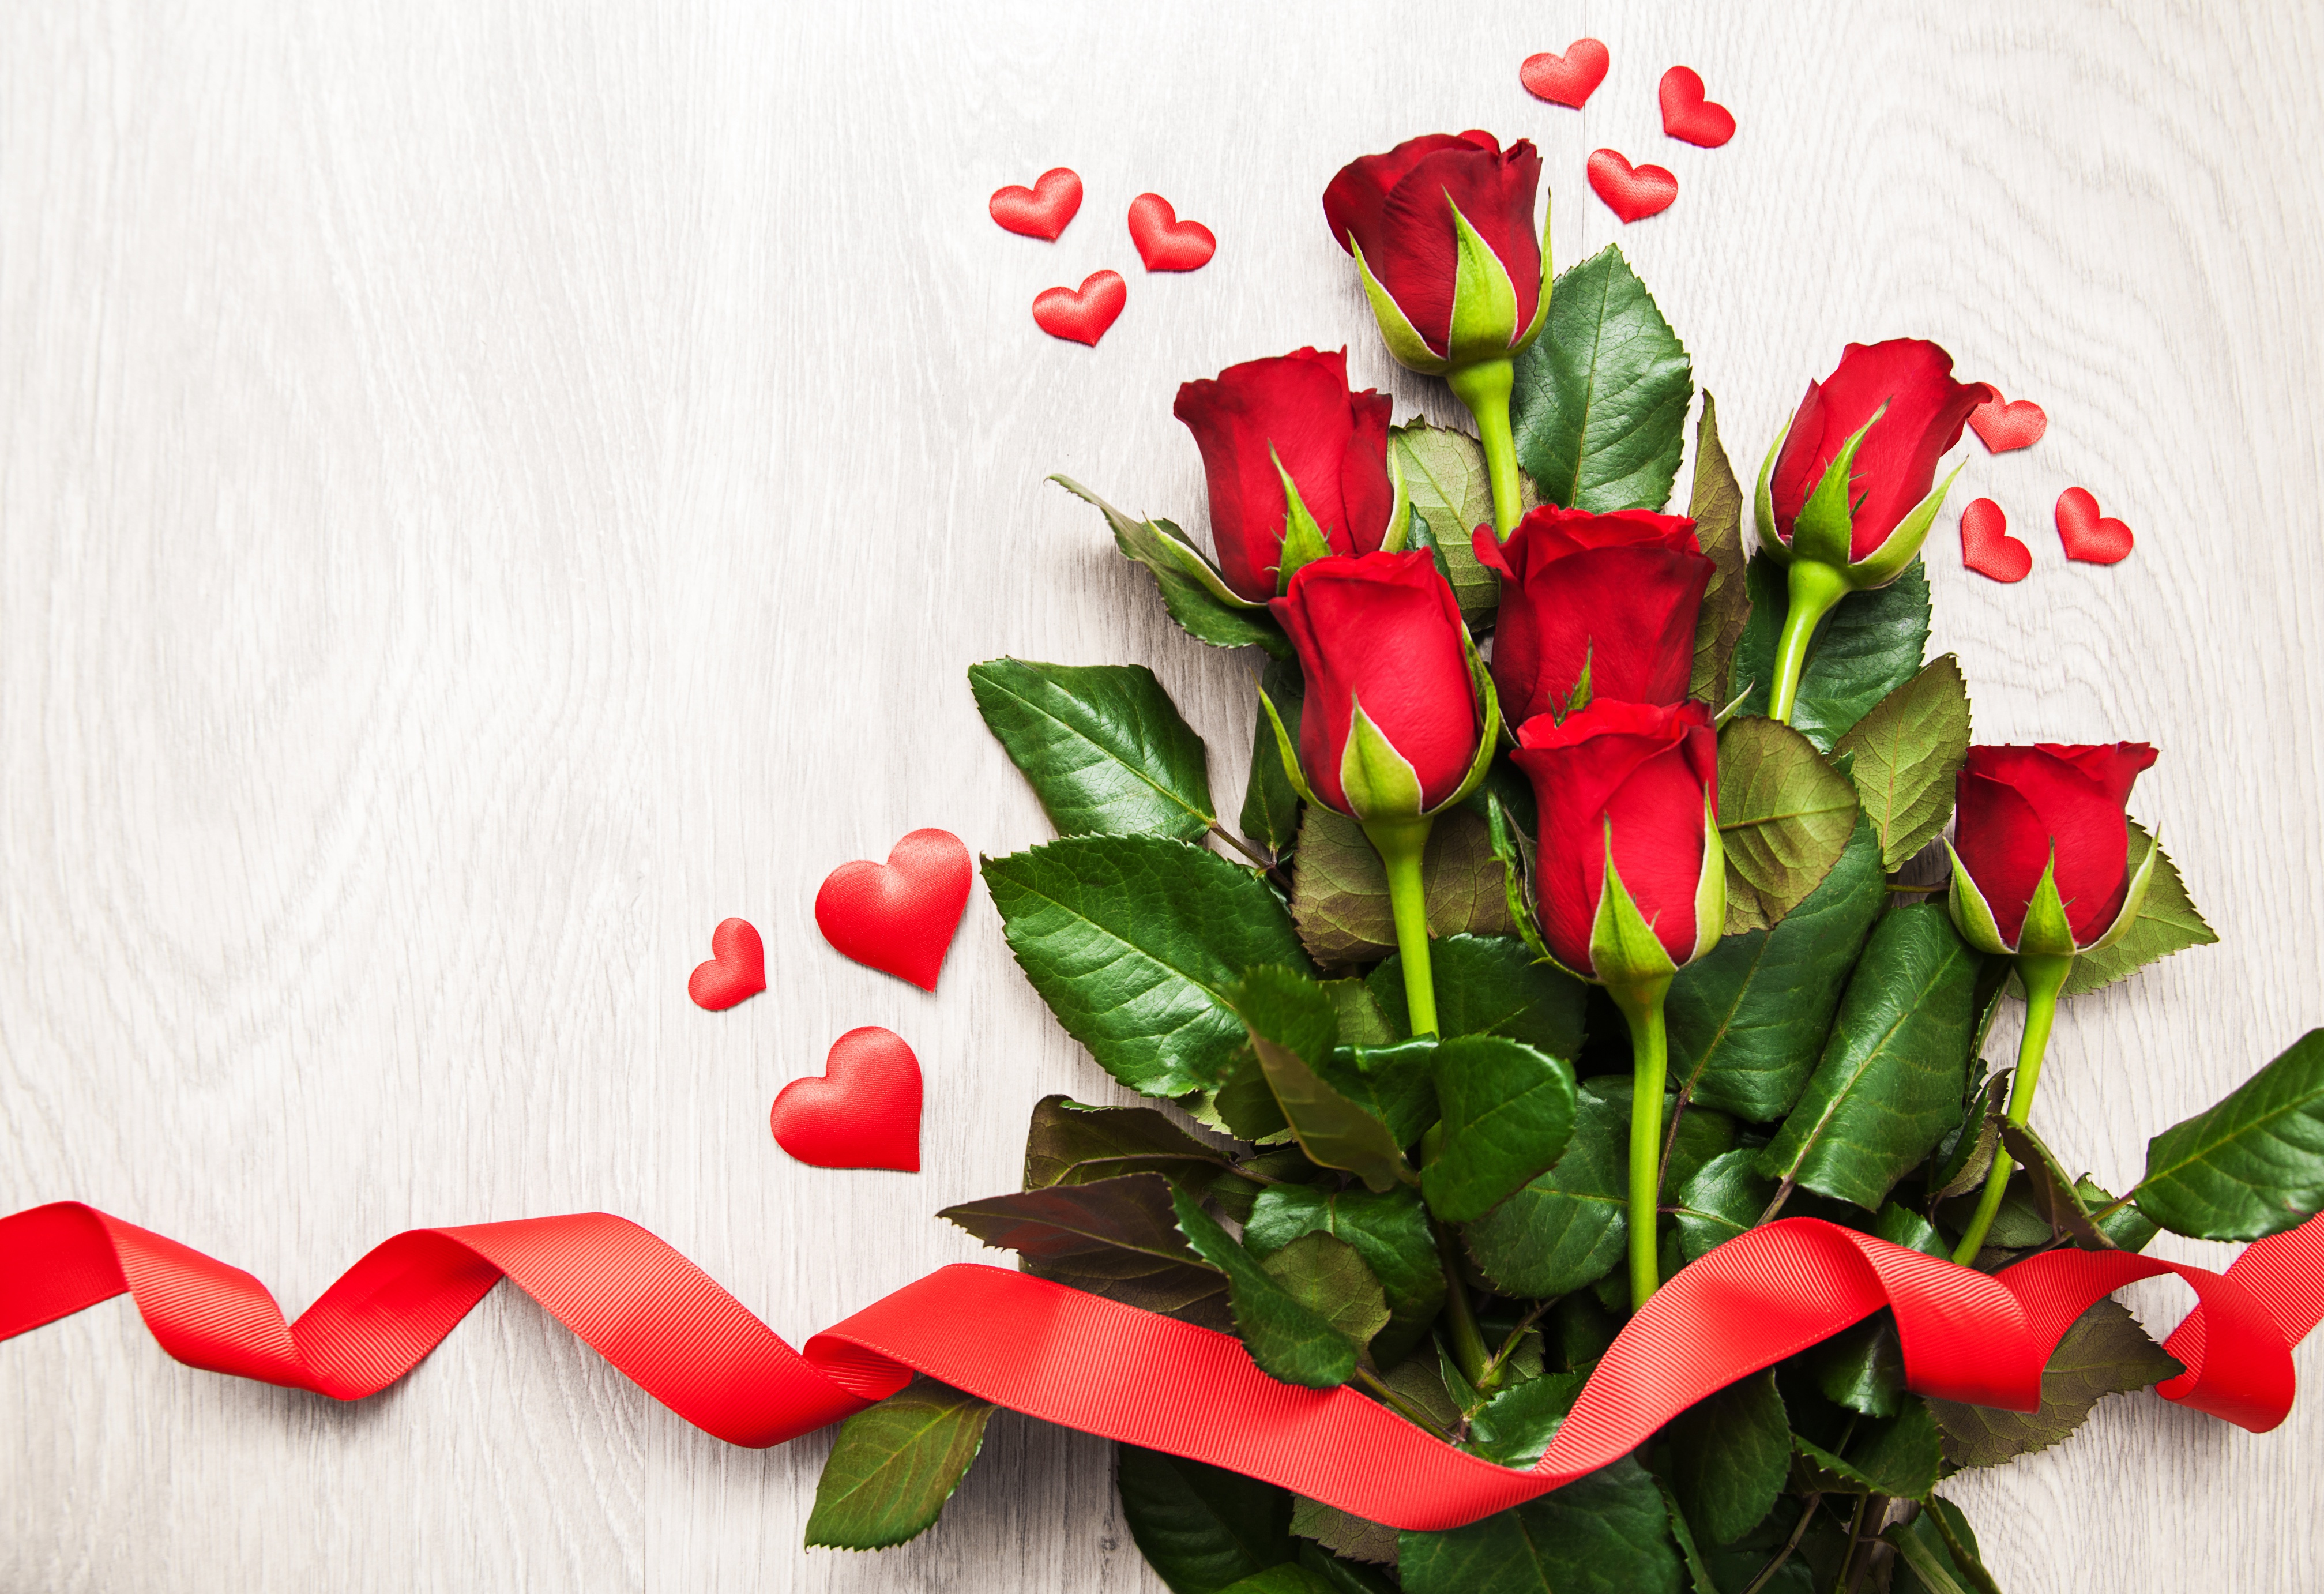 Rực rỡ và đầy cảm xúc, hoa hồng đỏ chính là biểu tượng của tình yêu và sự trân trọng. Hãy ngắm nhìn những cánh hoa hồng đỏ tuyệt đẹp này để cảm nhận một cảm giác lãng mạn và đầy ý nghĩa.